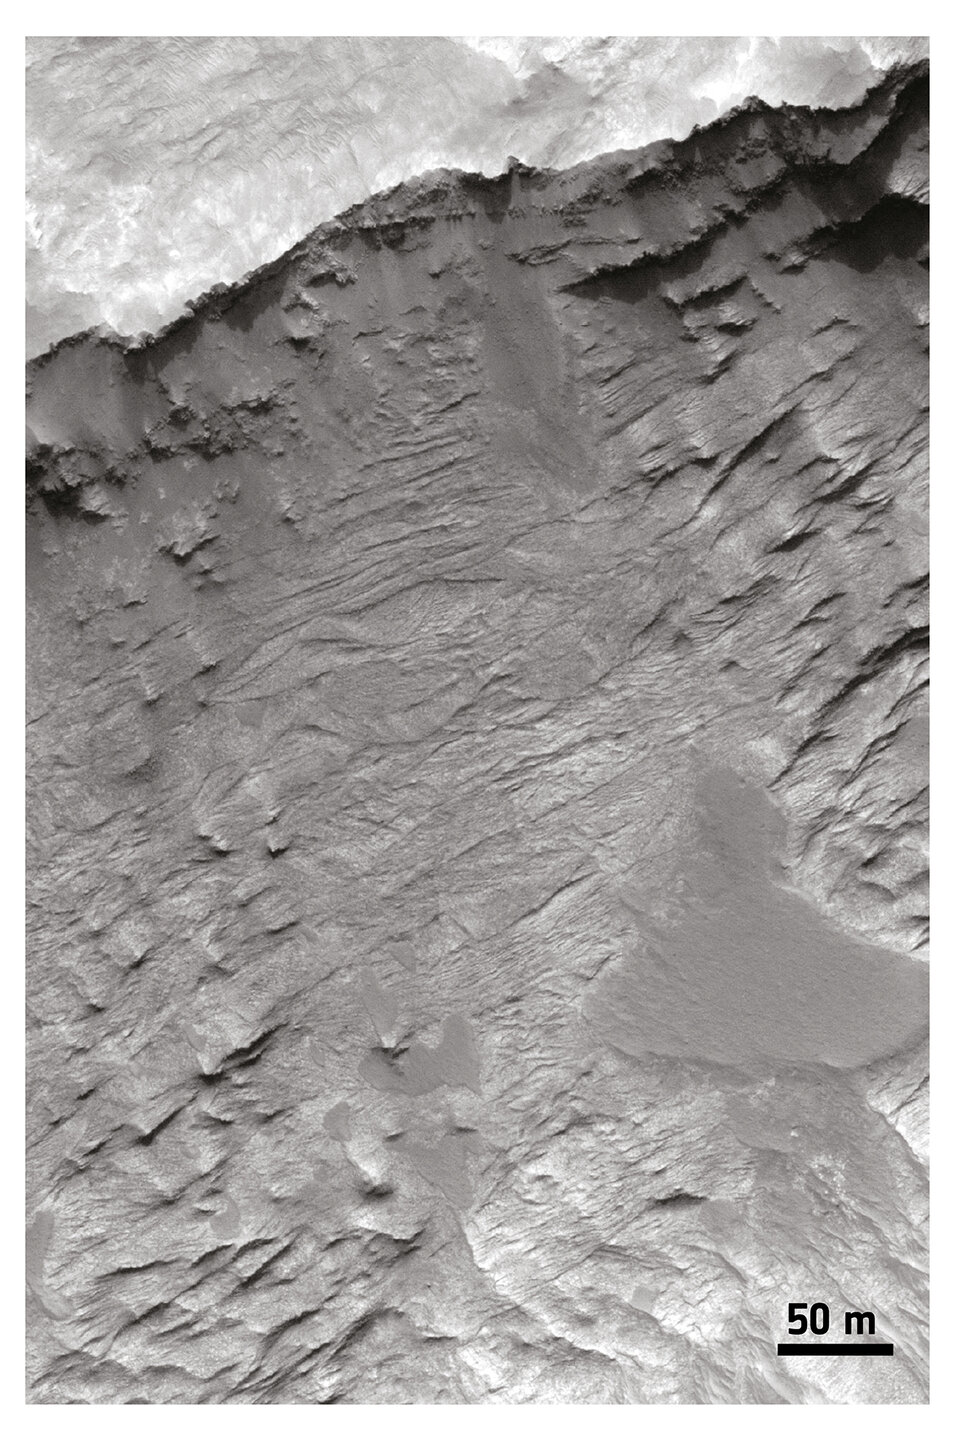 Cross-bedding stratifications in sedimentary rocks, Hellas Basin region. Credit: NASA/JPL/University of Arizona